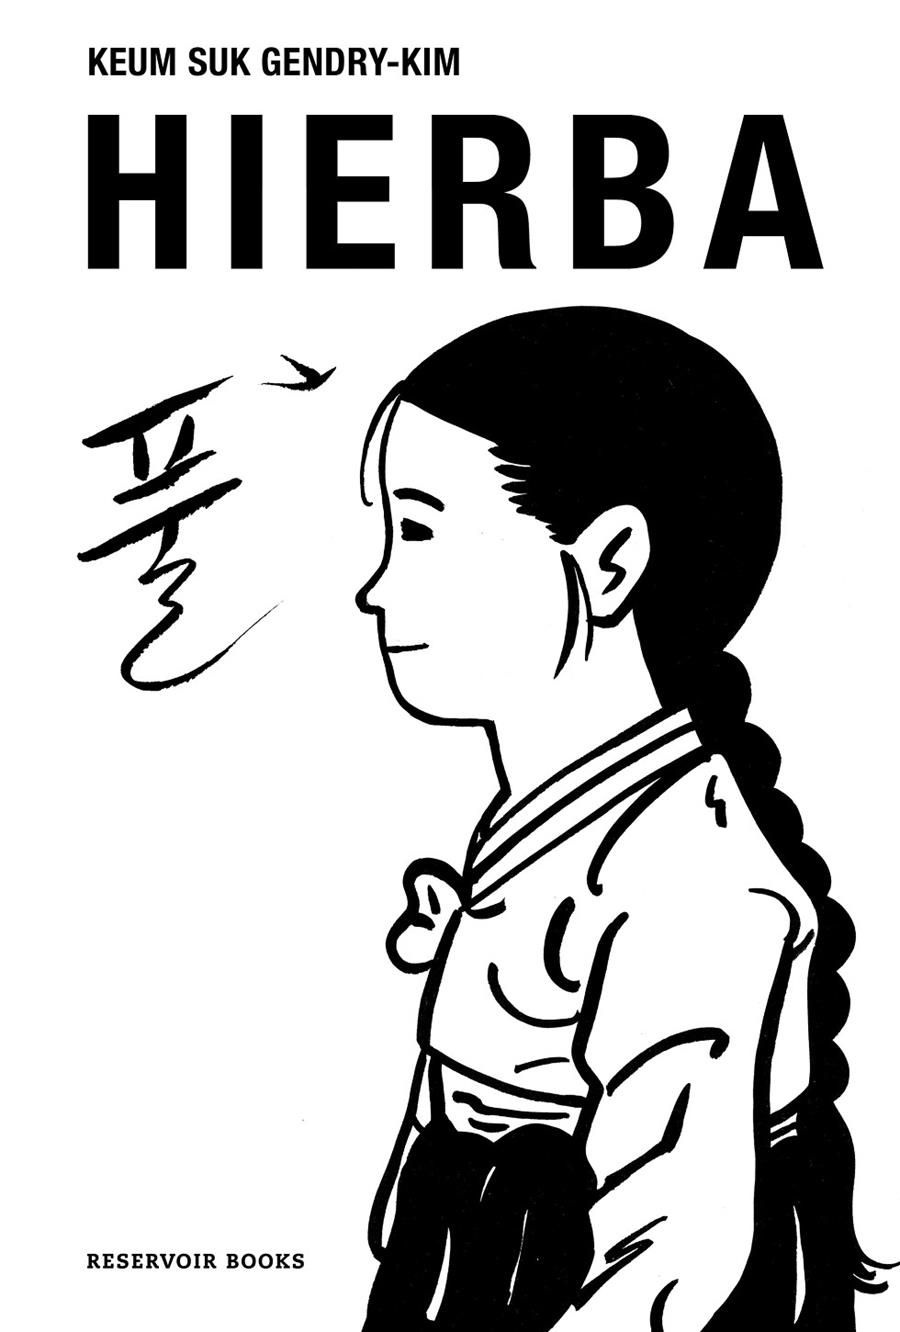 HIERBA [RUSTICA] | GENDRY-KIM, KEUM SUK | Akira Comics  - libreria donde comprar comics, juegos y libros online